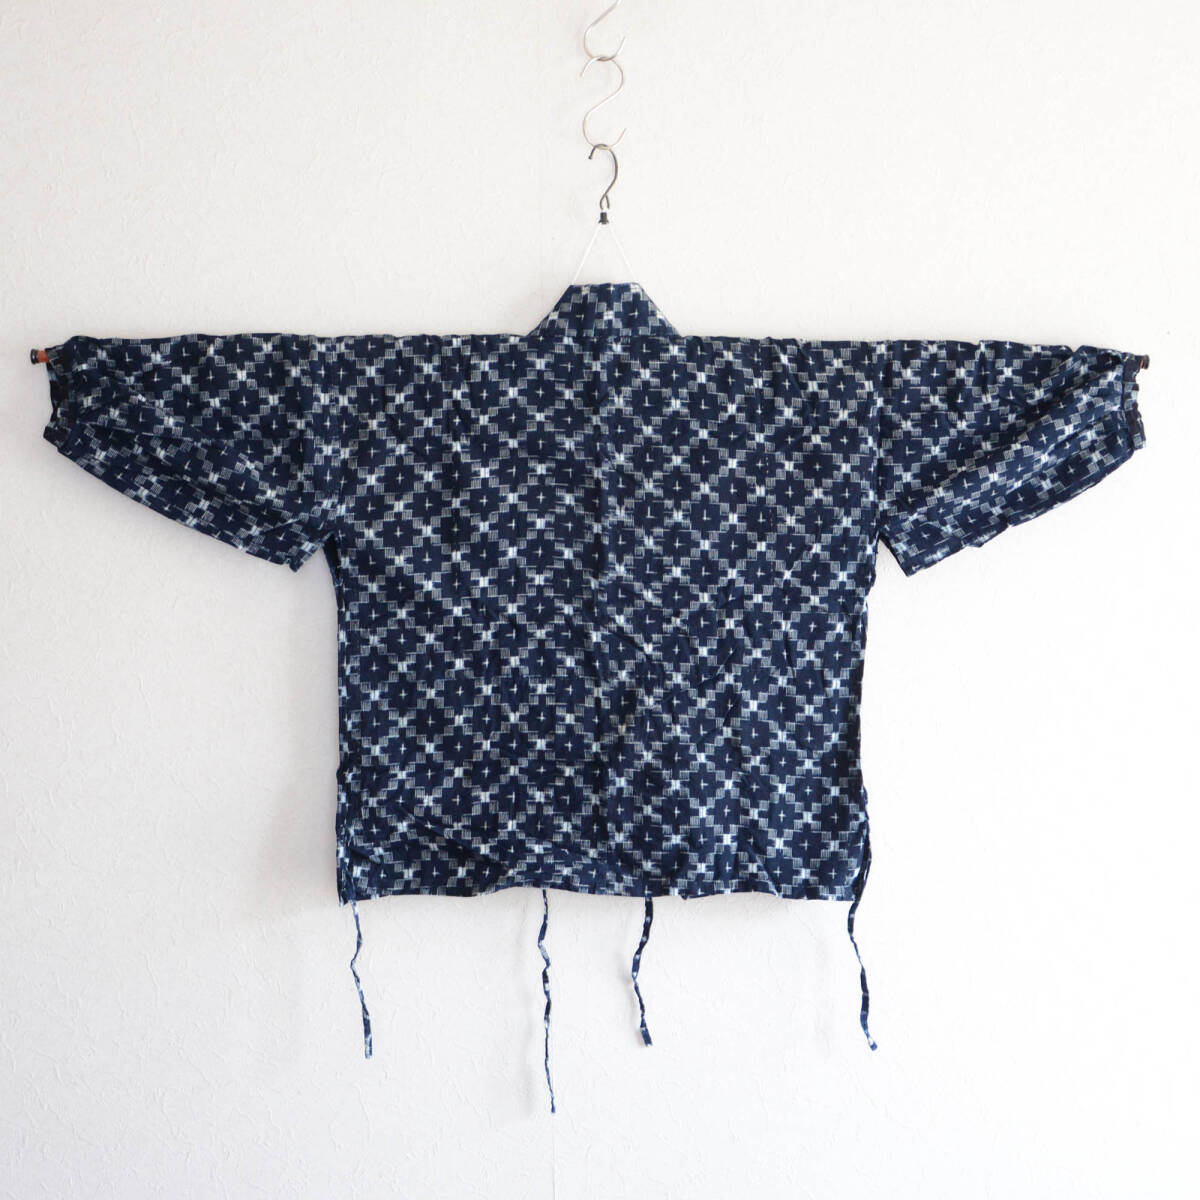 野良着 古布 藍染 絣 木綿 着物 手ぬぐい ジャパンヴィンテージ リメイク素材 昭和 noragi jacket indigo kasuri fabric kimono cottonの画像3